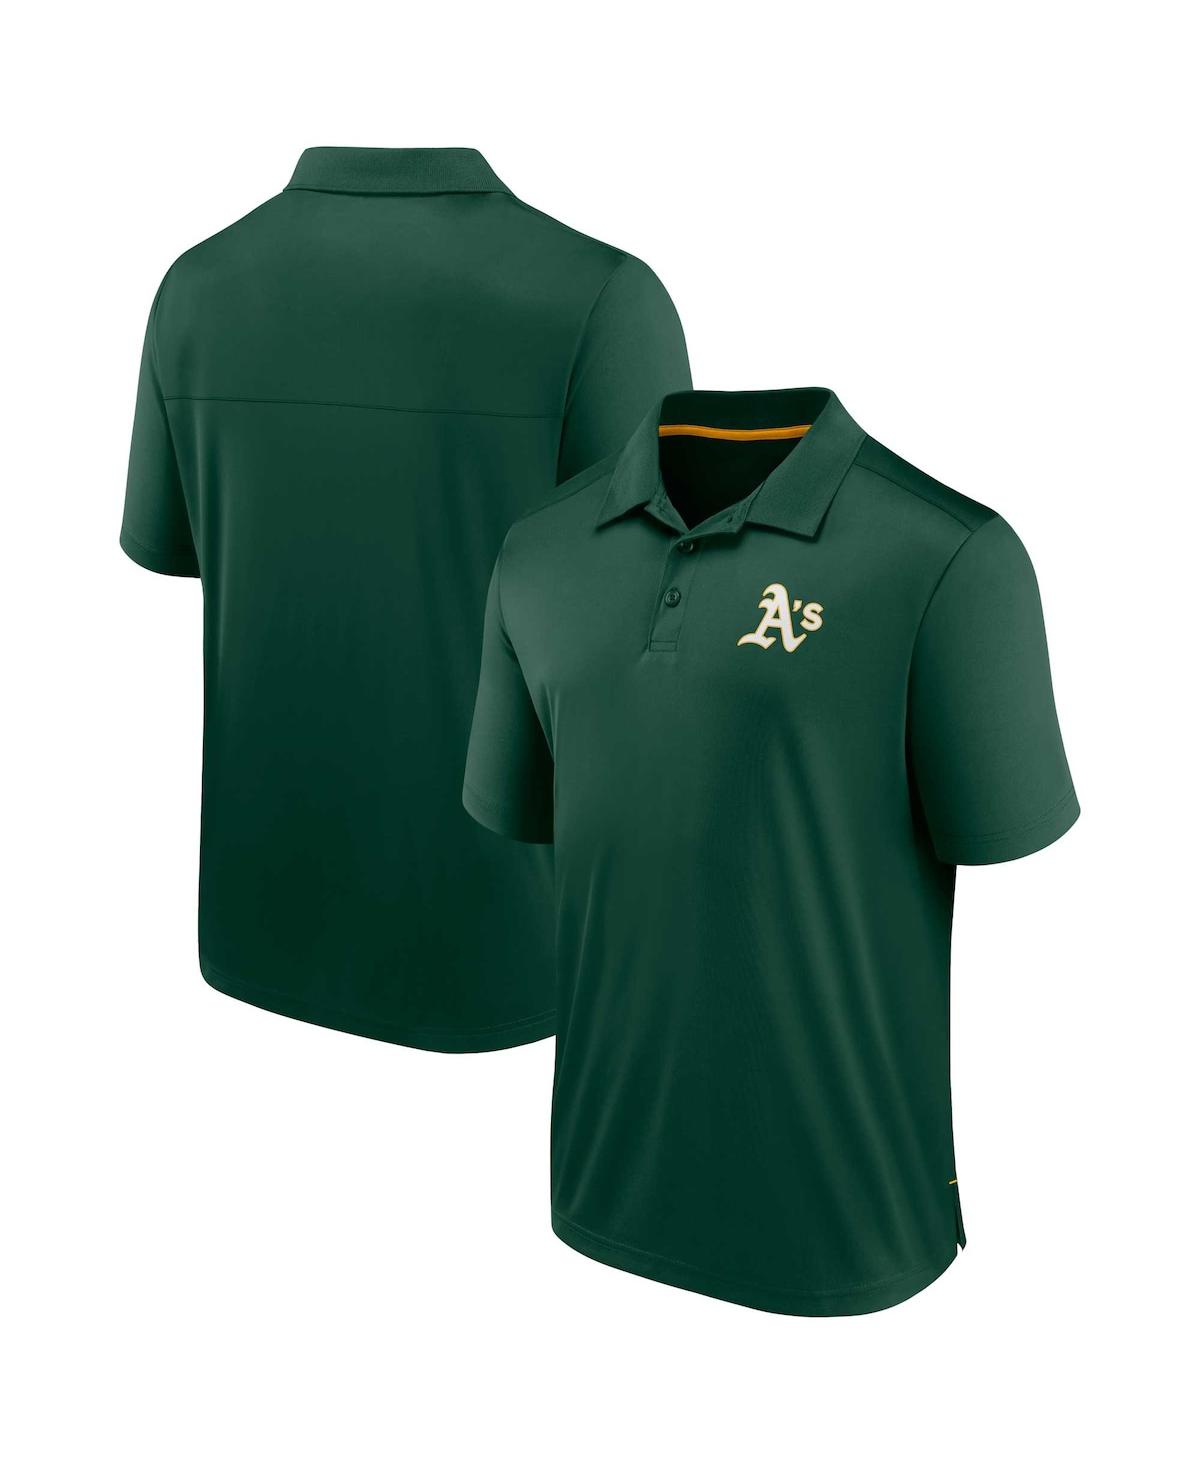 Fanatics Men's  Branded Green Oakland Athletics Winning Streak Polo Shirt